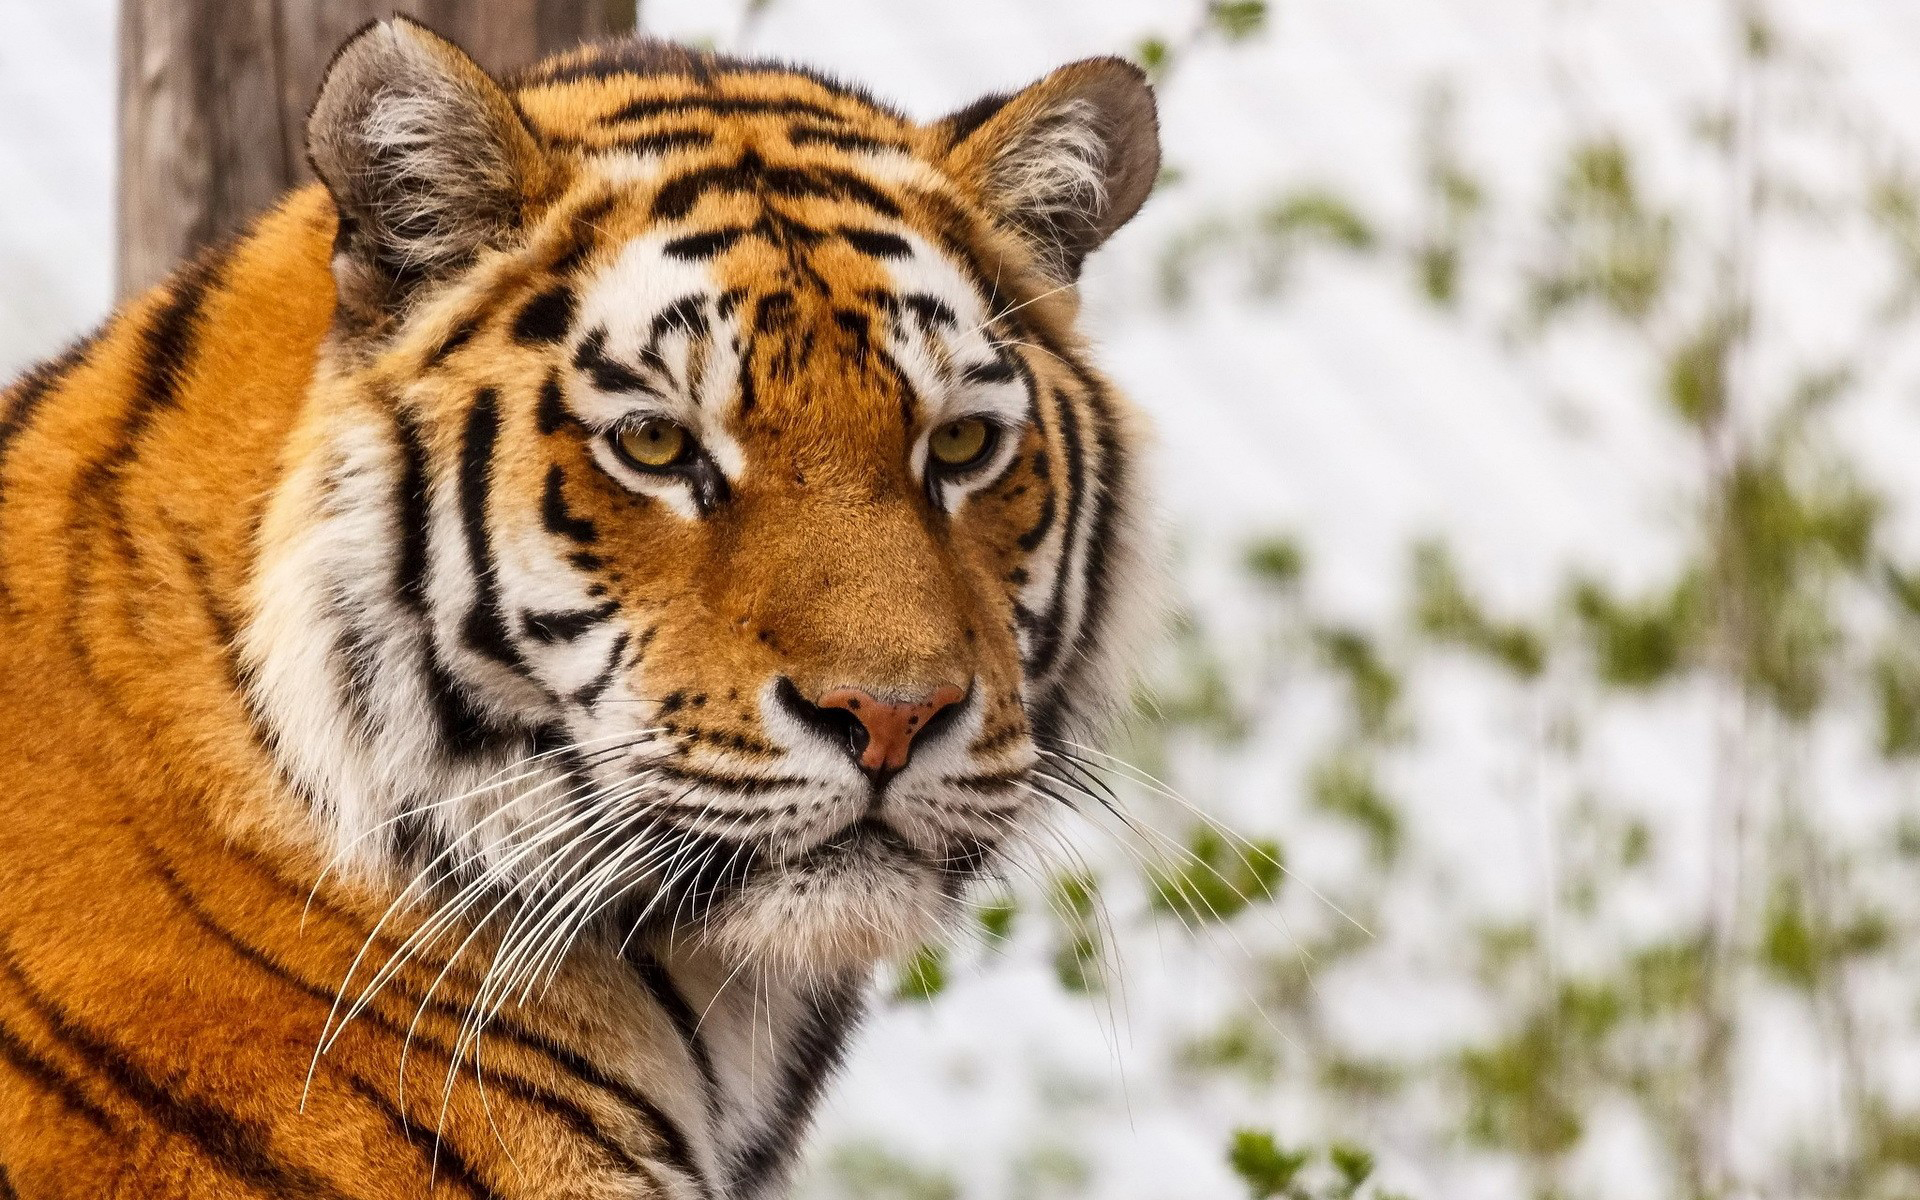 tigre wallpaper,tiger,wildlife,mammal,terrestrial animal,vertebrate